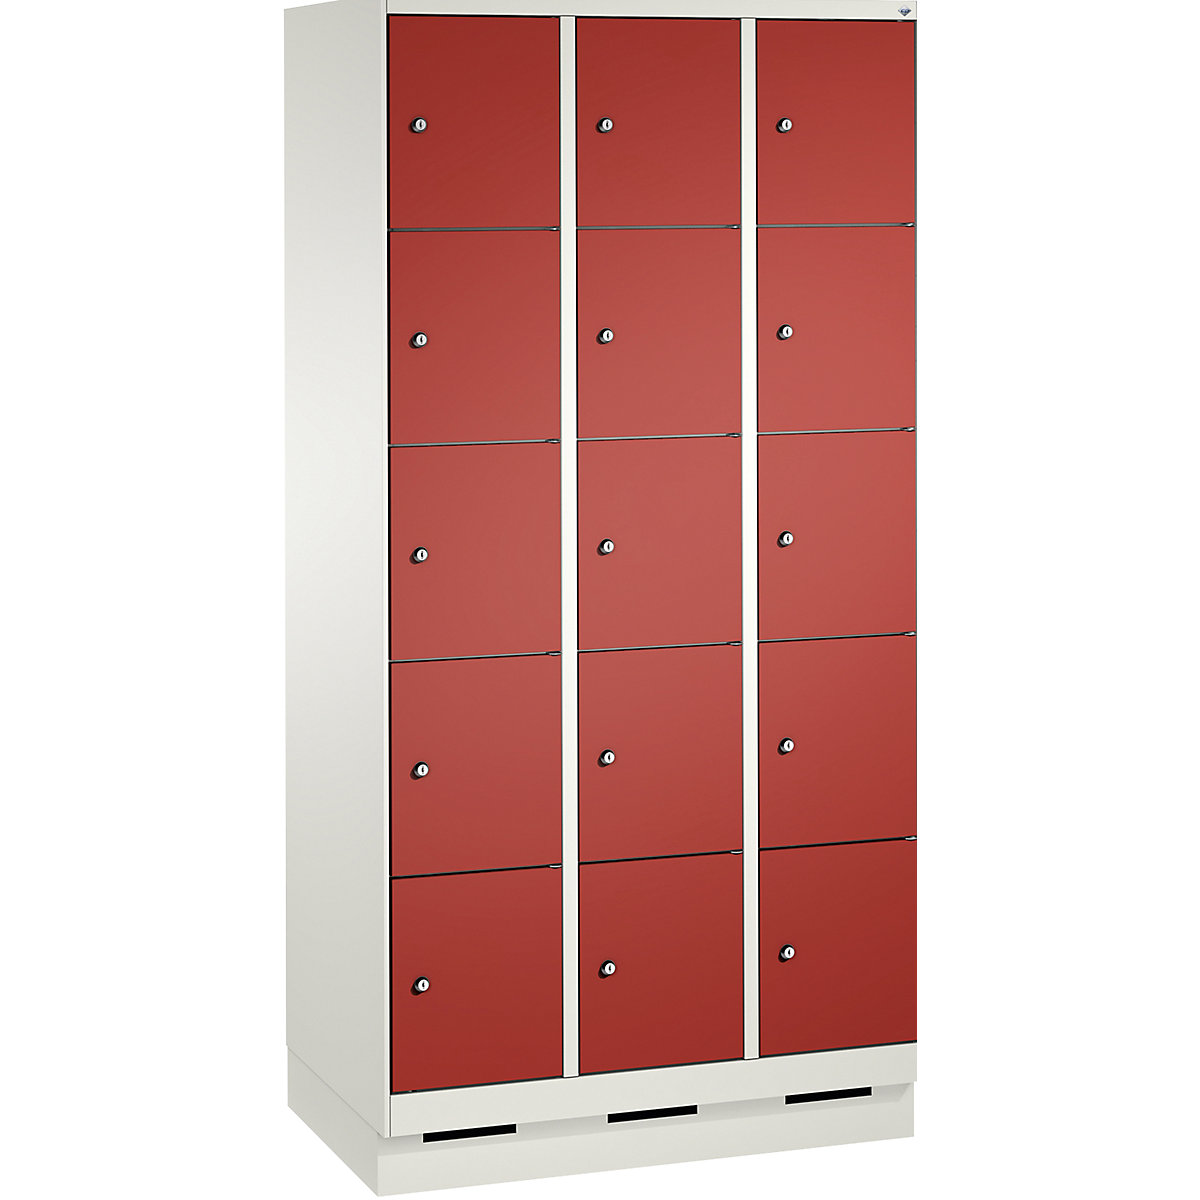 Armoire à casiers sur socle EVOLO – C+P, 3 compartiments, 5 casiers chacun, largeur compartiments 300 mm, blanc trafic / rouge feu-13